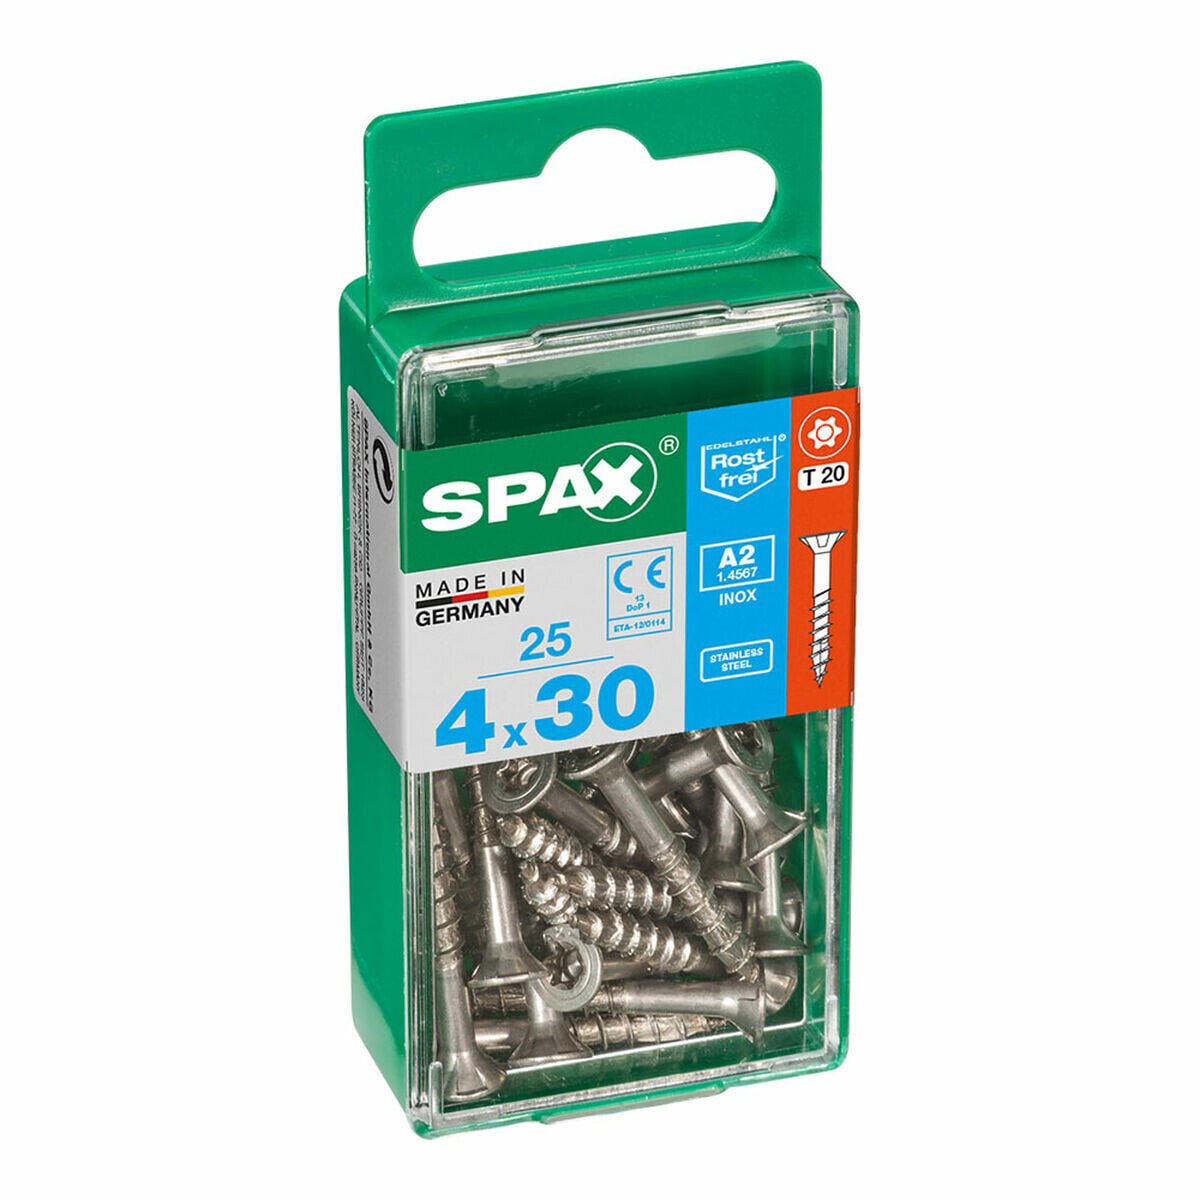 Коробка для винтов SPAX 4197000400301 Шуруп Плоская головка (4 x 30 mm) (4,0 x 30 mm)